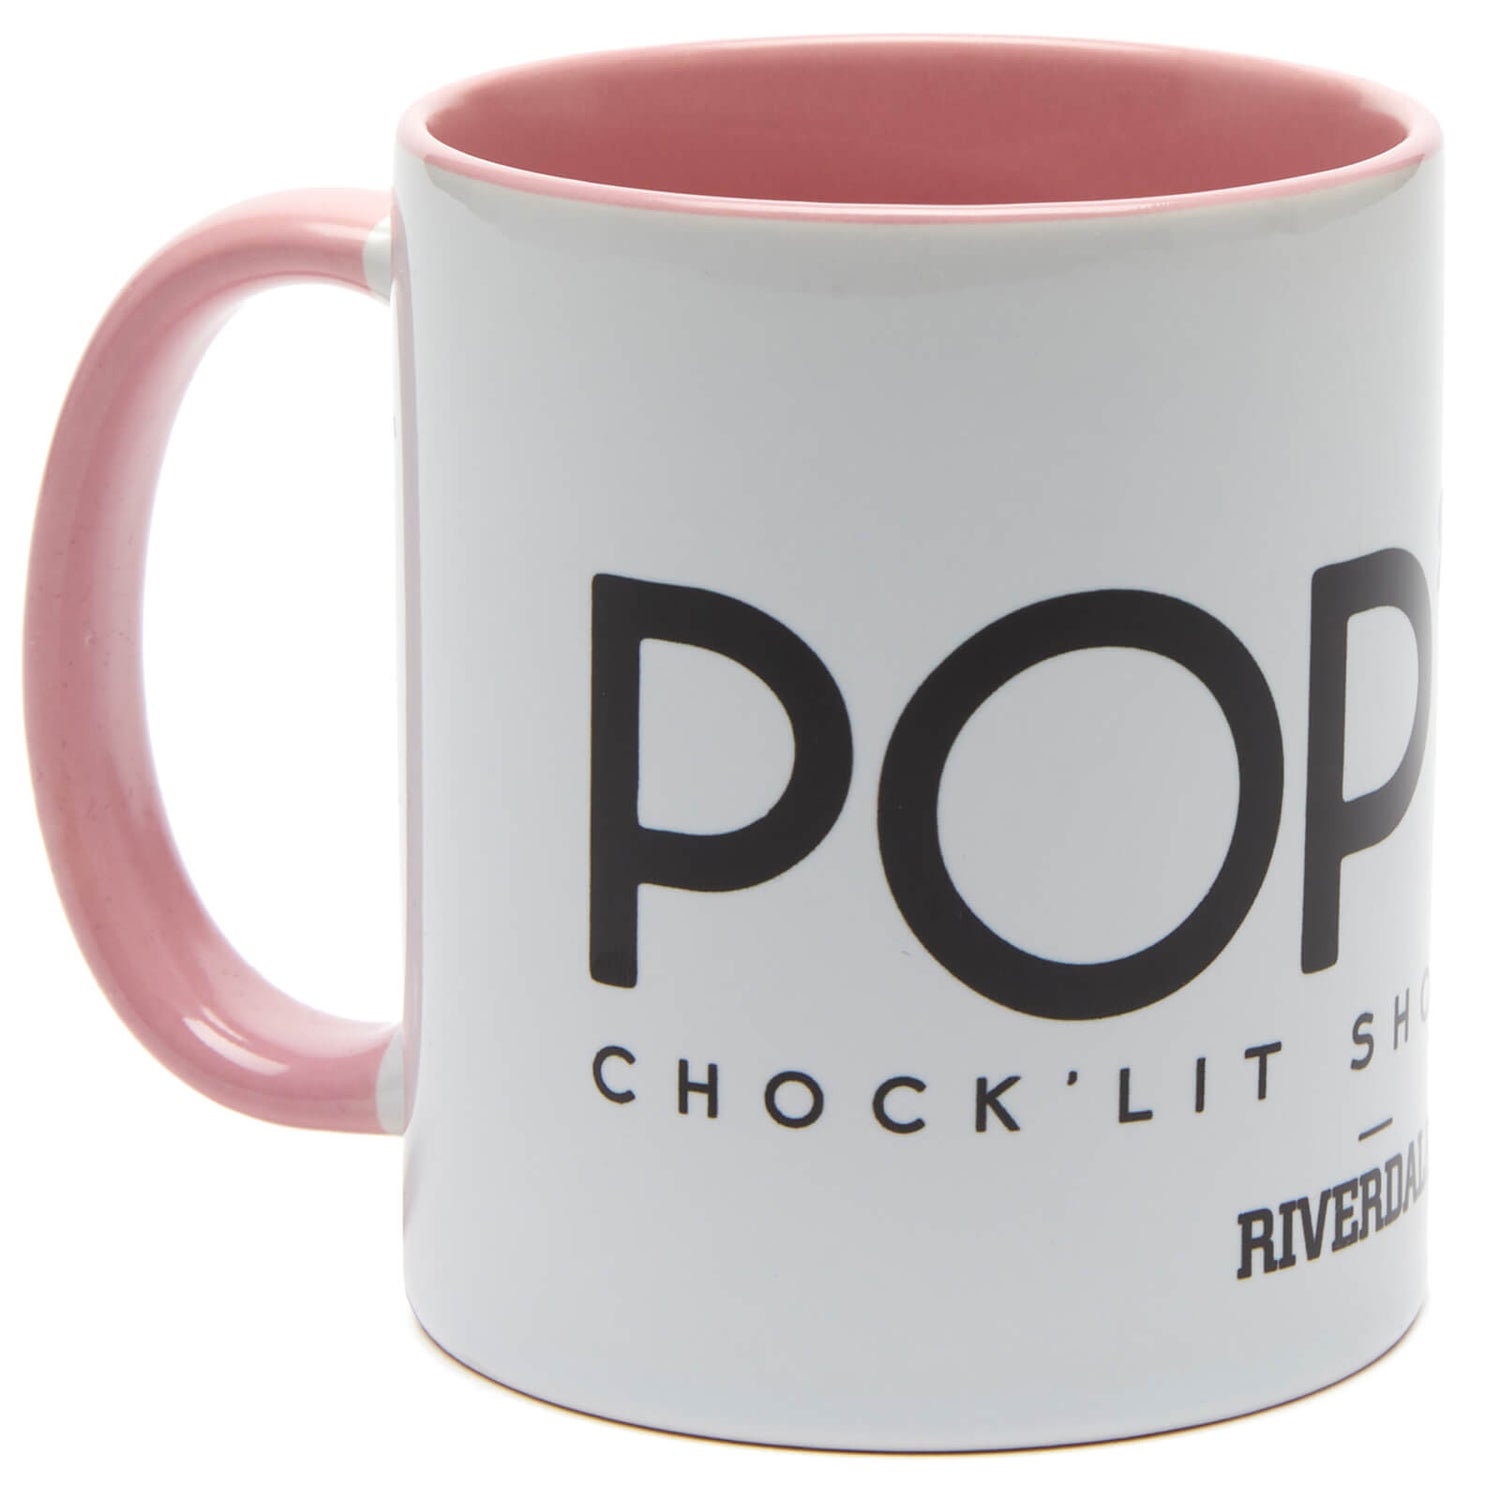 Riverdale Pops Chocklit Shoppe Mug - Blanc/Rose